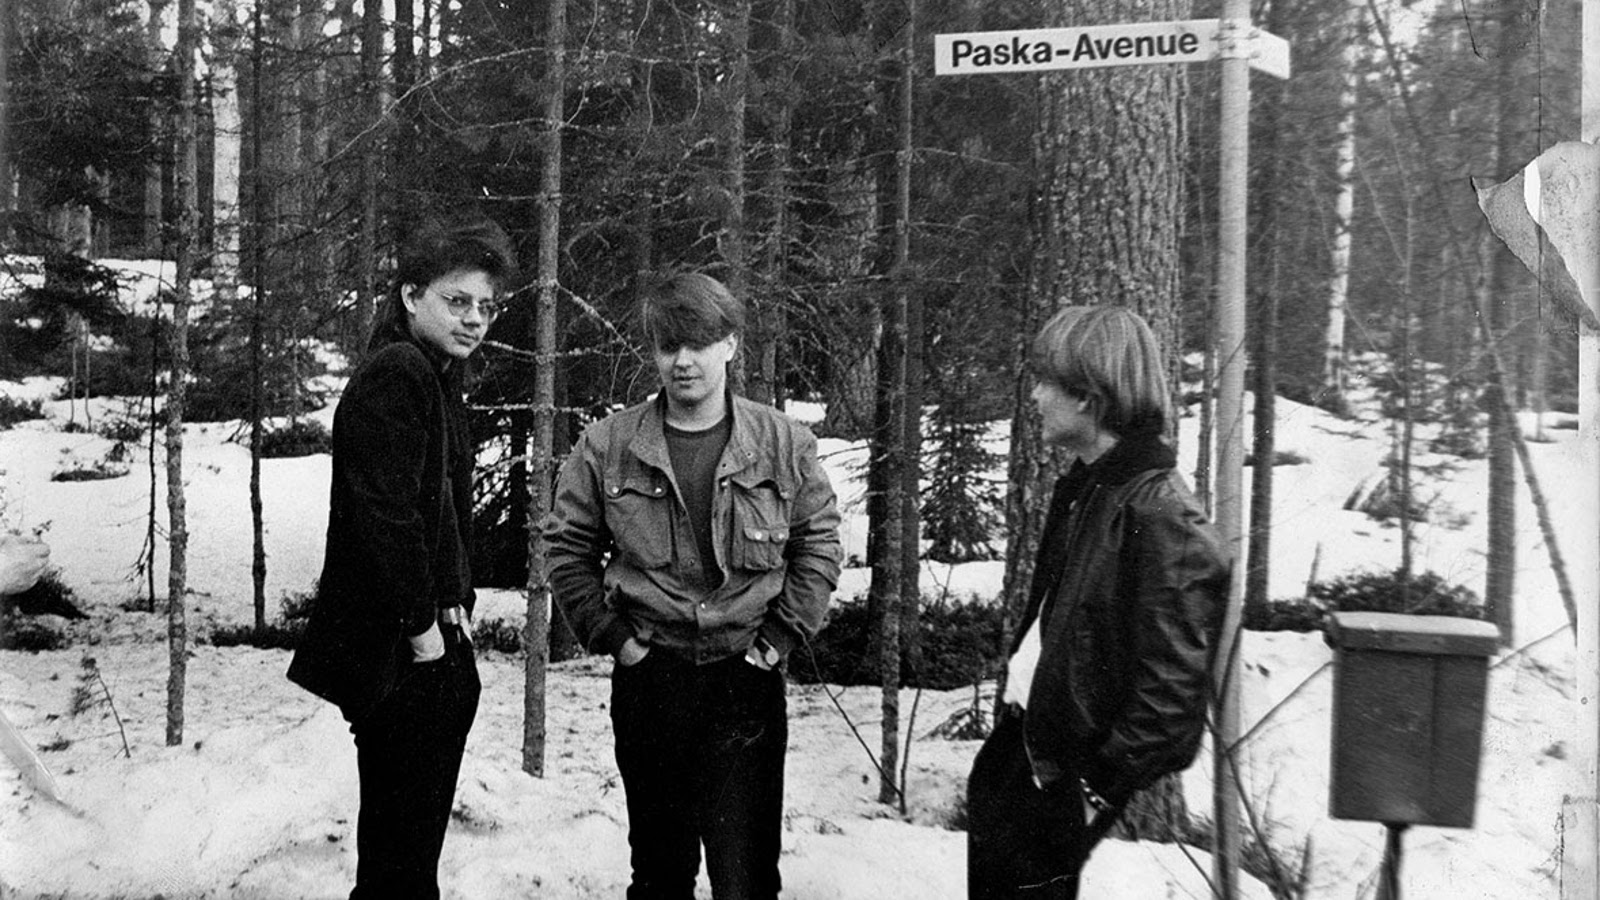 Kuvassa on kolme poikaa, jotka seisovat metsikössä ja heidän luonaan on katukyltti, jossa lukee Paska-Avenue.  Heillä on pusakat ja mustat farkut päällään.